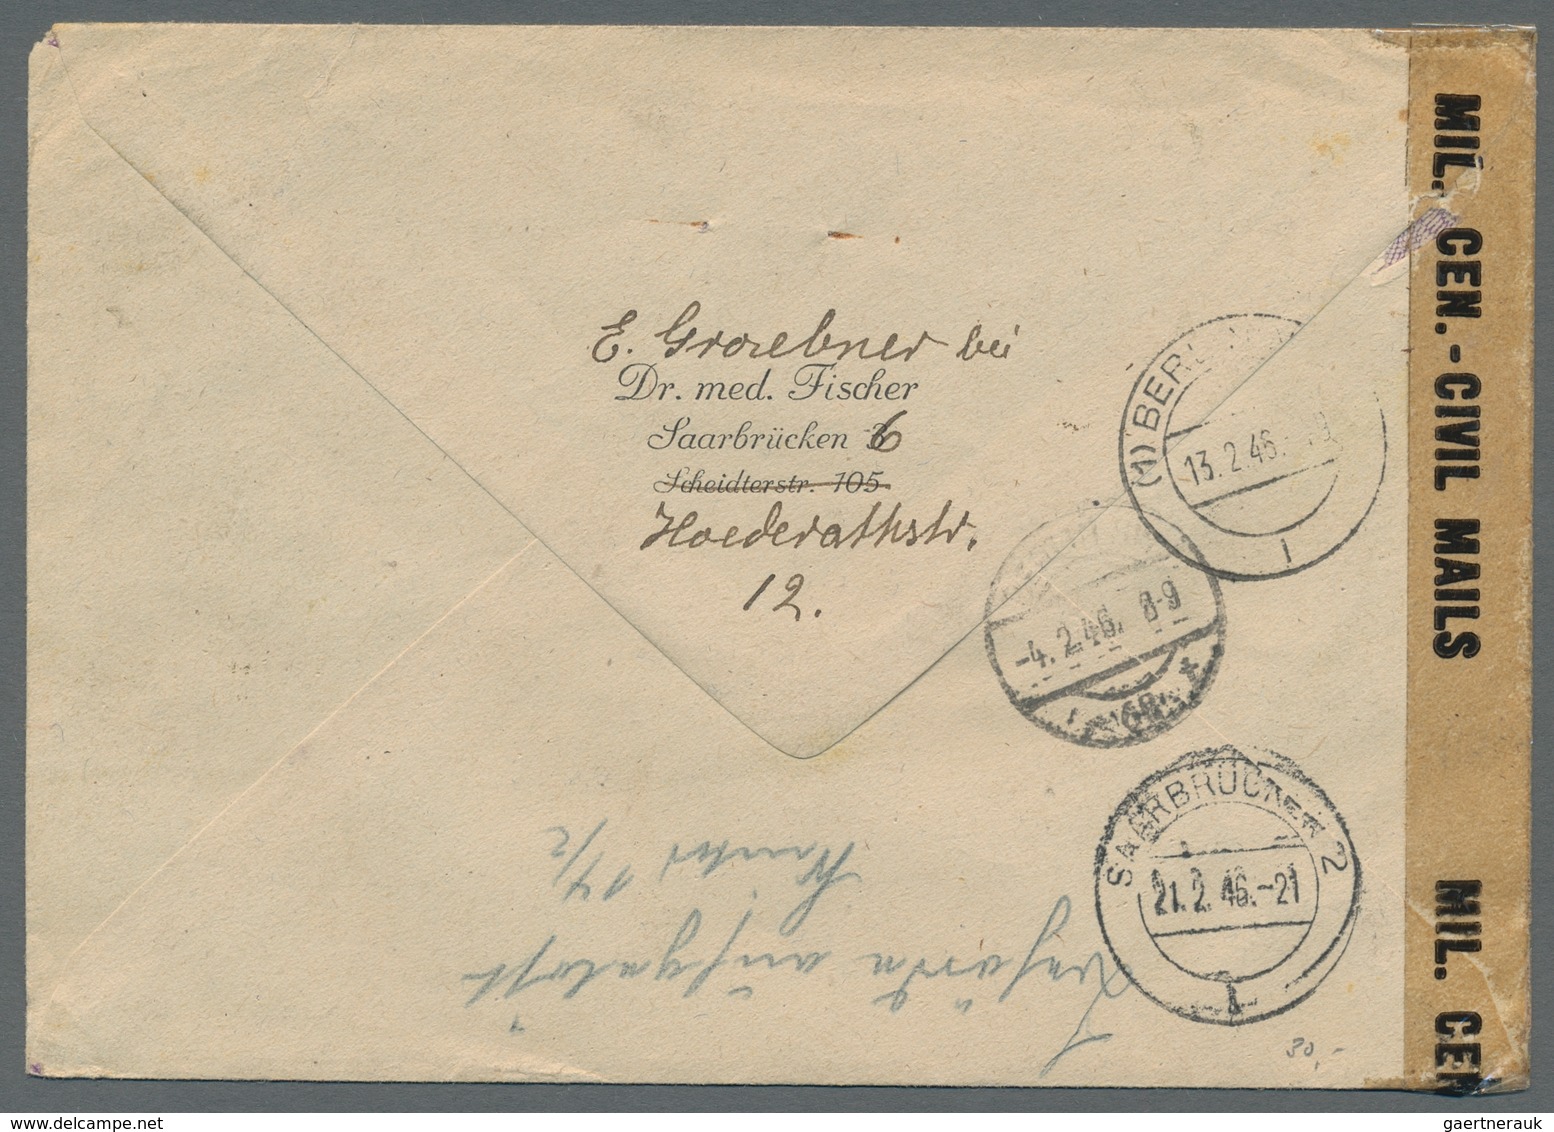 Saarland und OPD Saarbrücken: 1945-1958, Bestand von 30 meist markenlosen Belegen. Besonders zu erwä